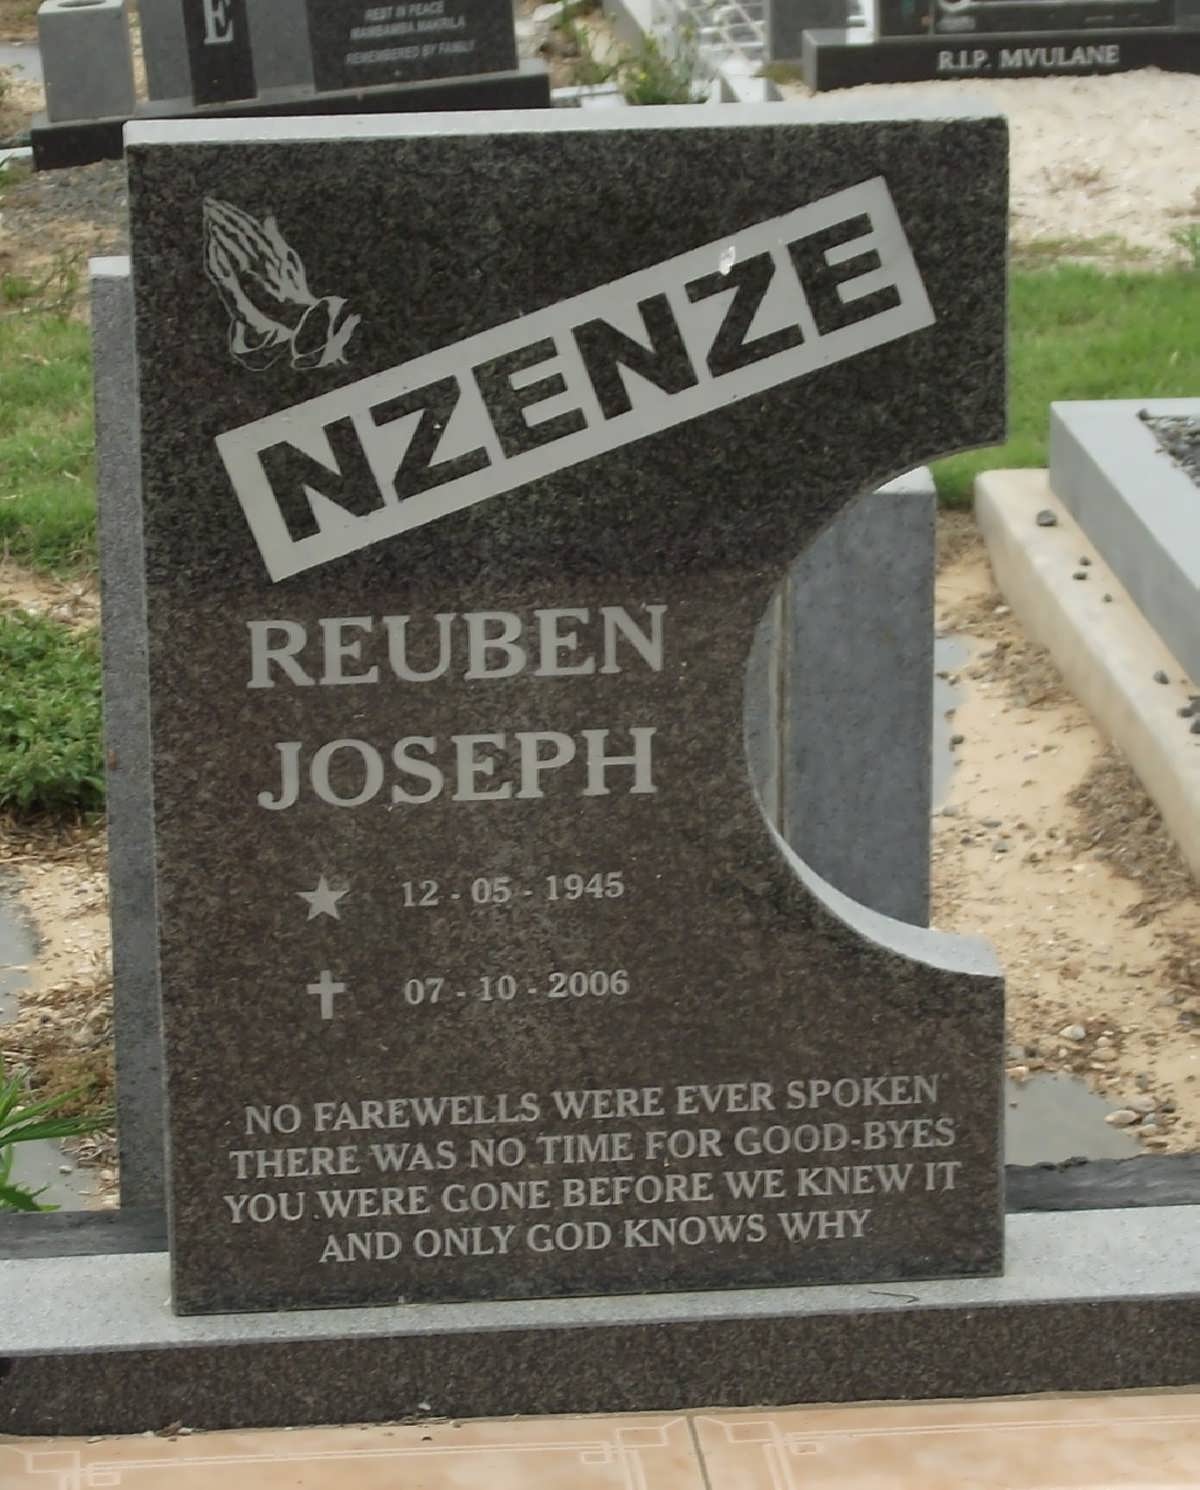 NZENZE Reuben Joseph 1945-2006